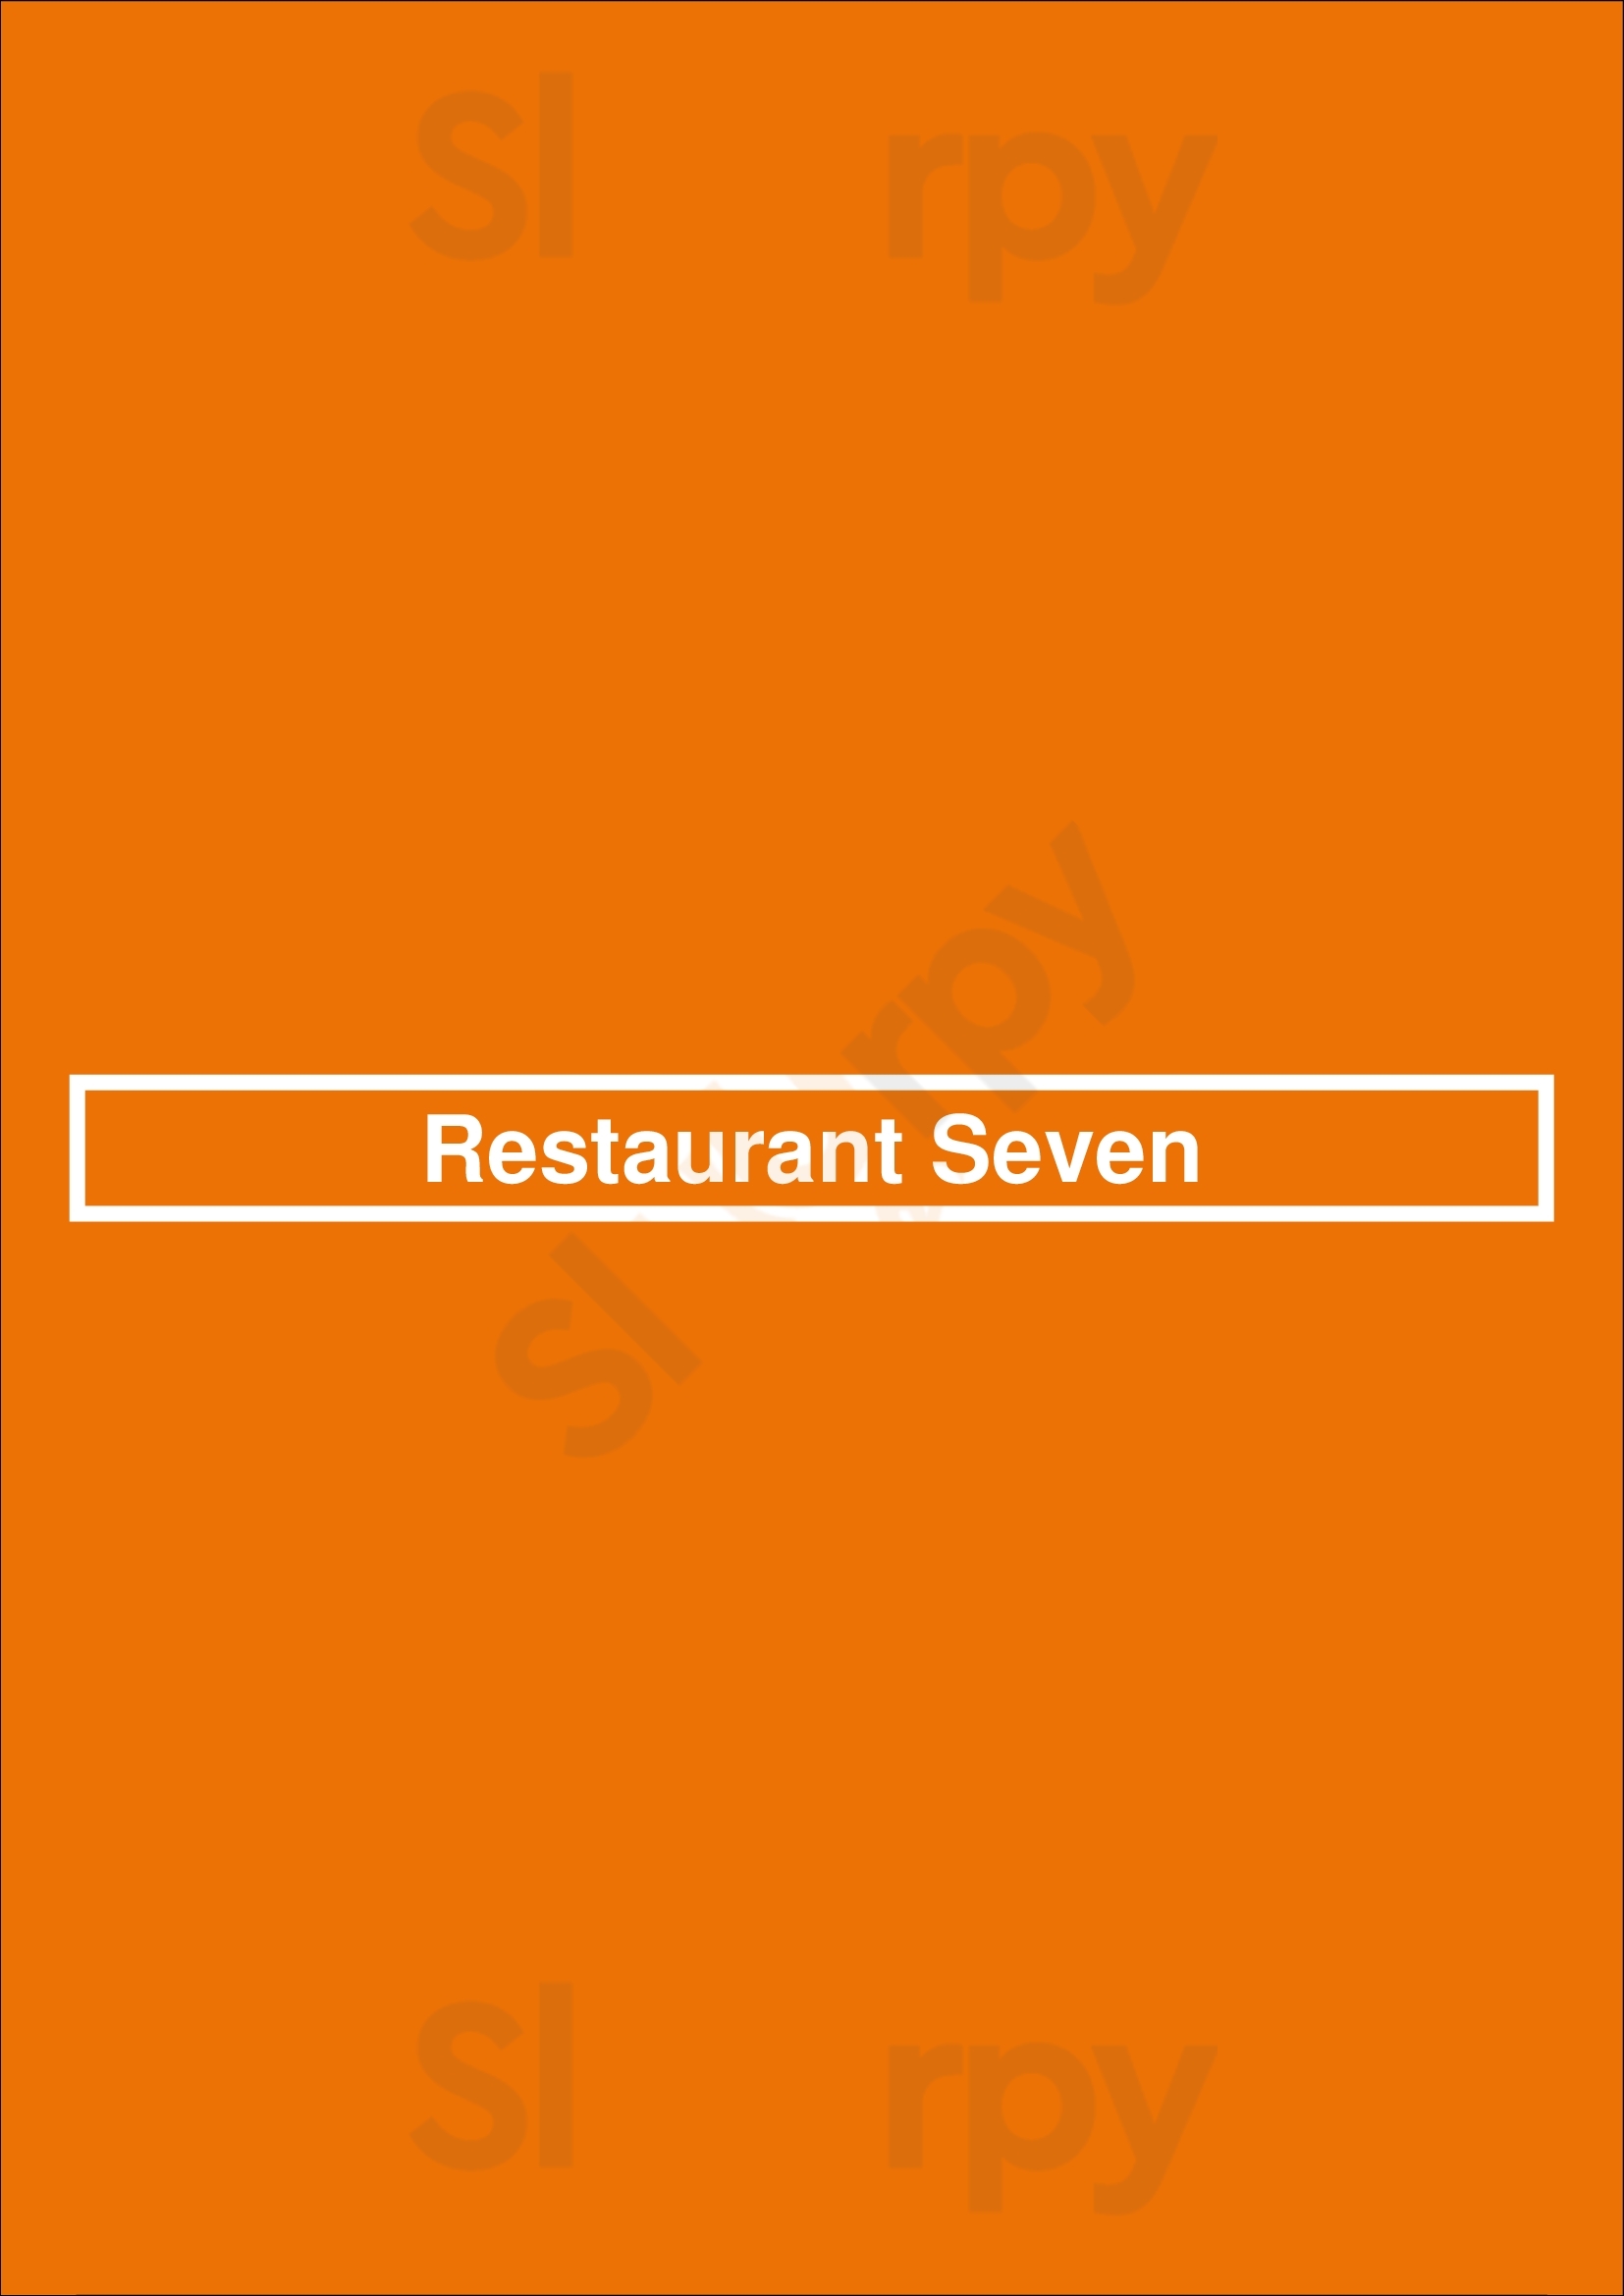 Restaurant Seven Utrecht Menu - 1